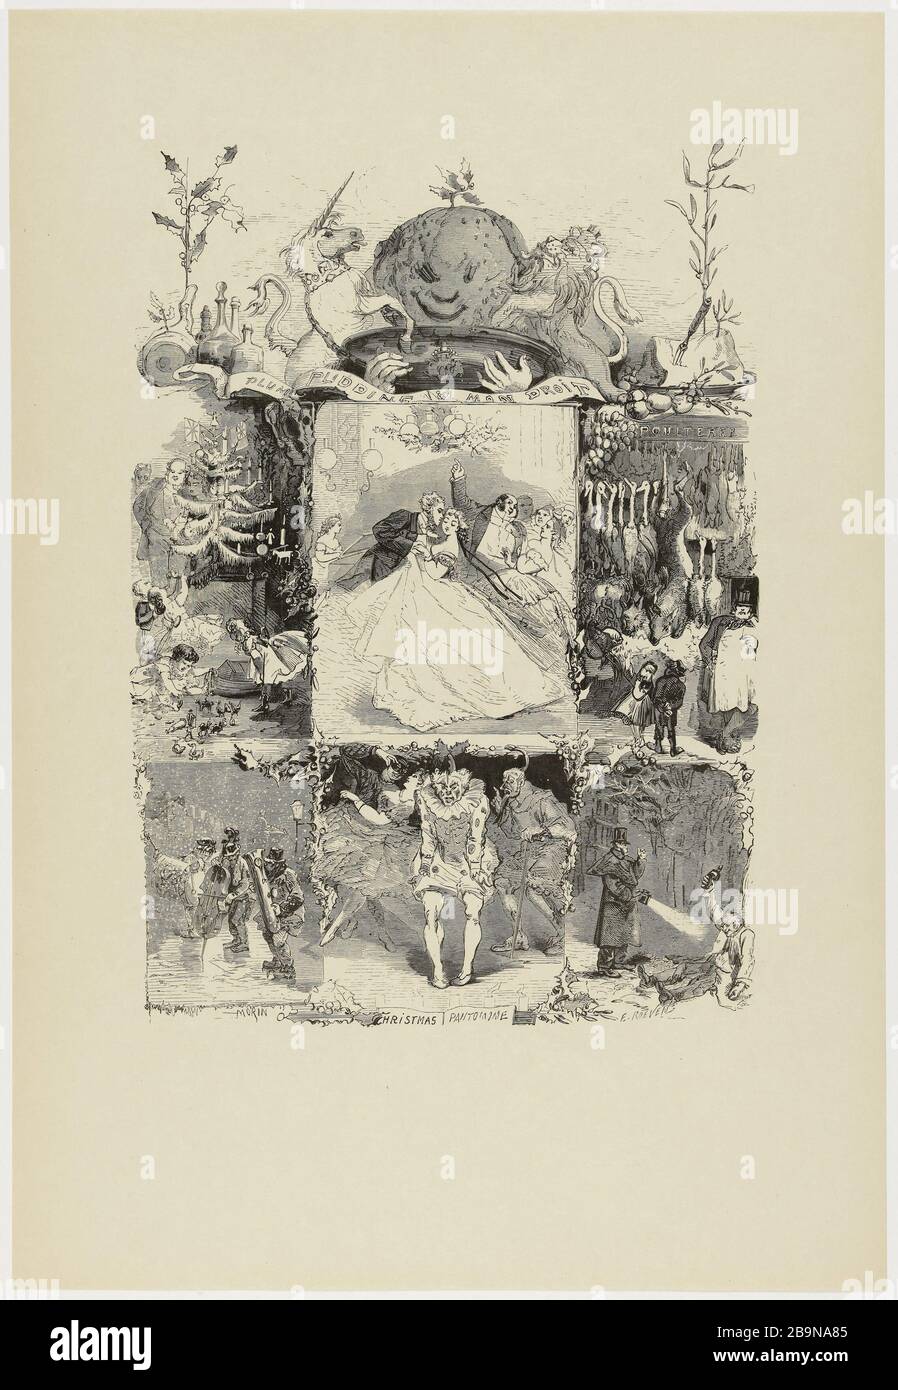 IL NATALE FATTO A LONDRA Edmond Morin (1824-1882). "Les fêtes de Christmas à Londres". Bois, 1864. Musée des Beaux-Arts de la Ville de Paris, Petit Palais. Foto Stock